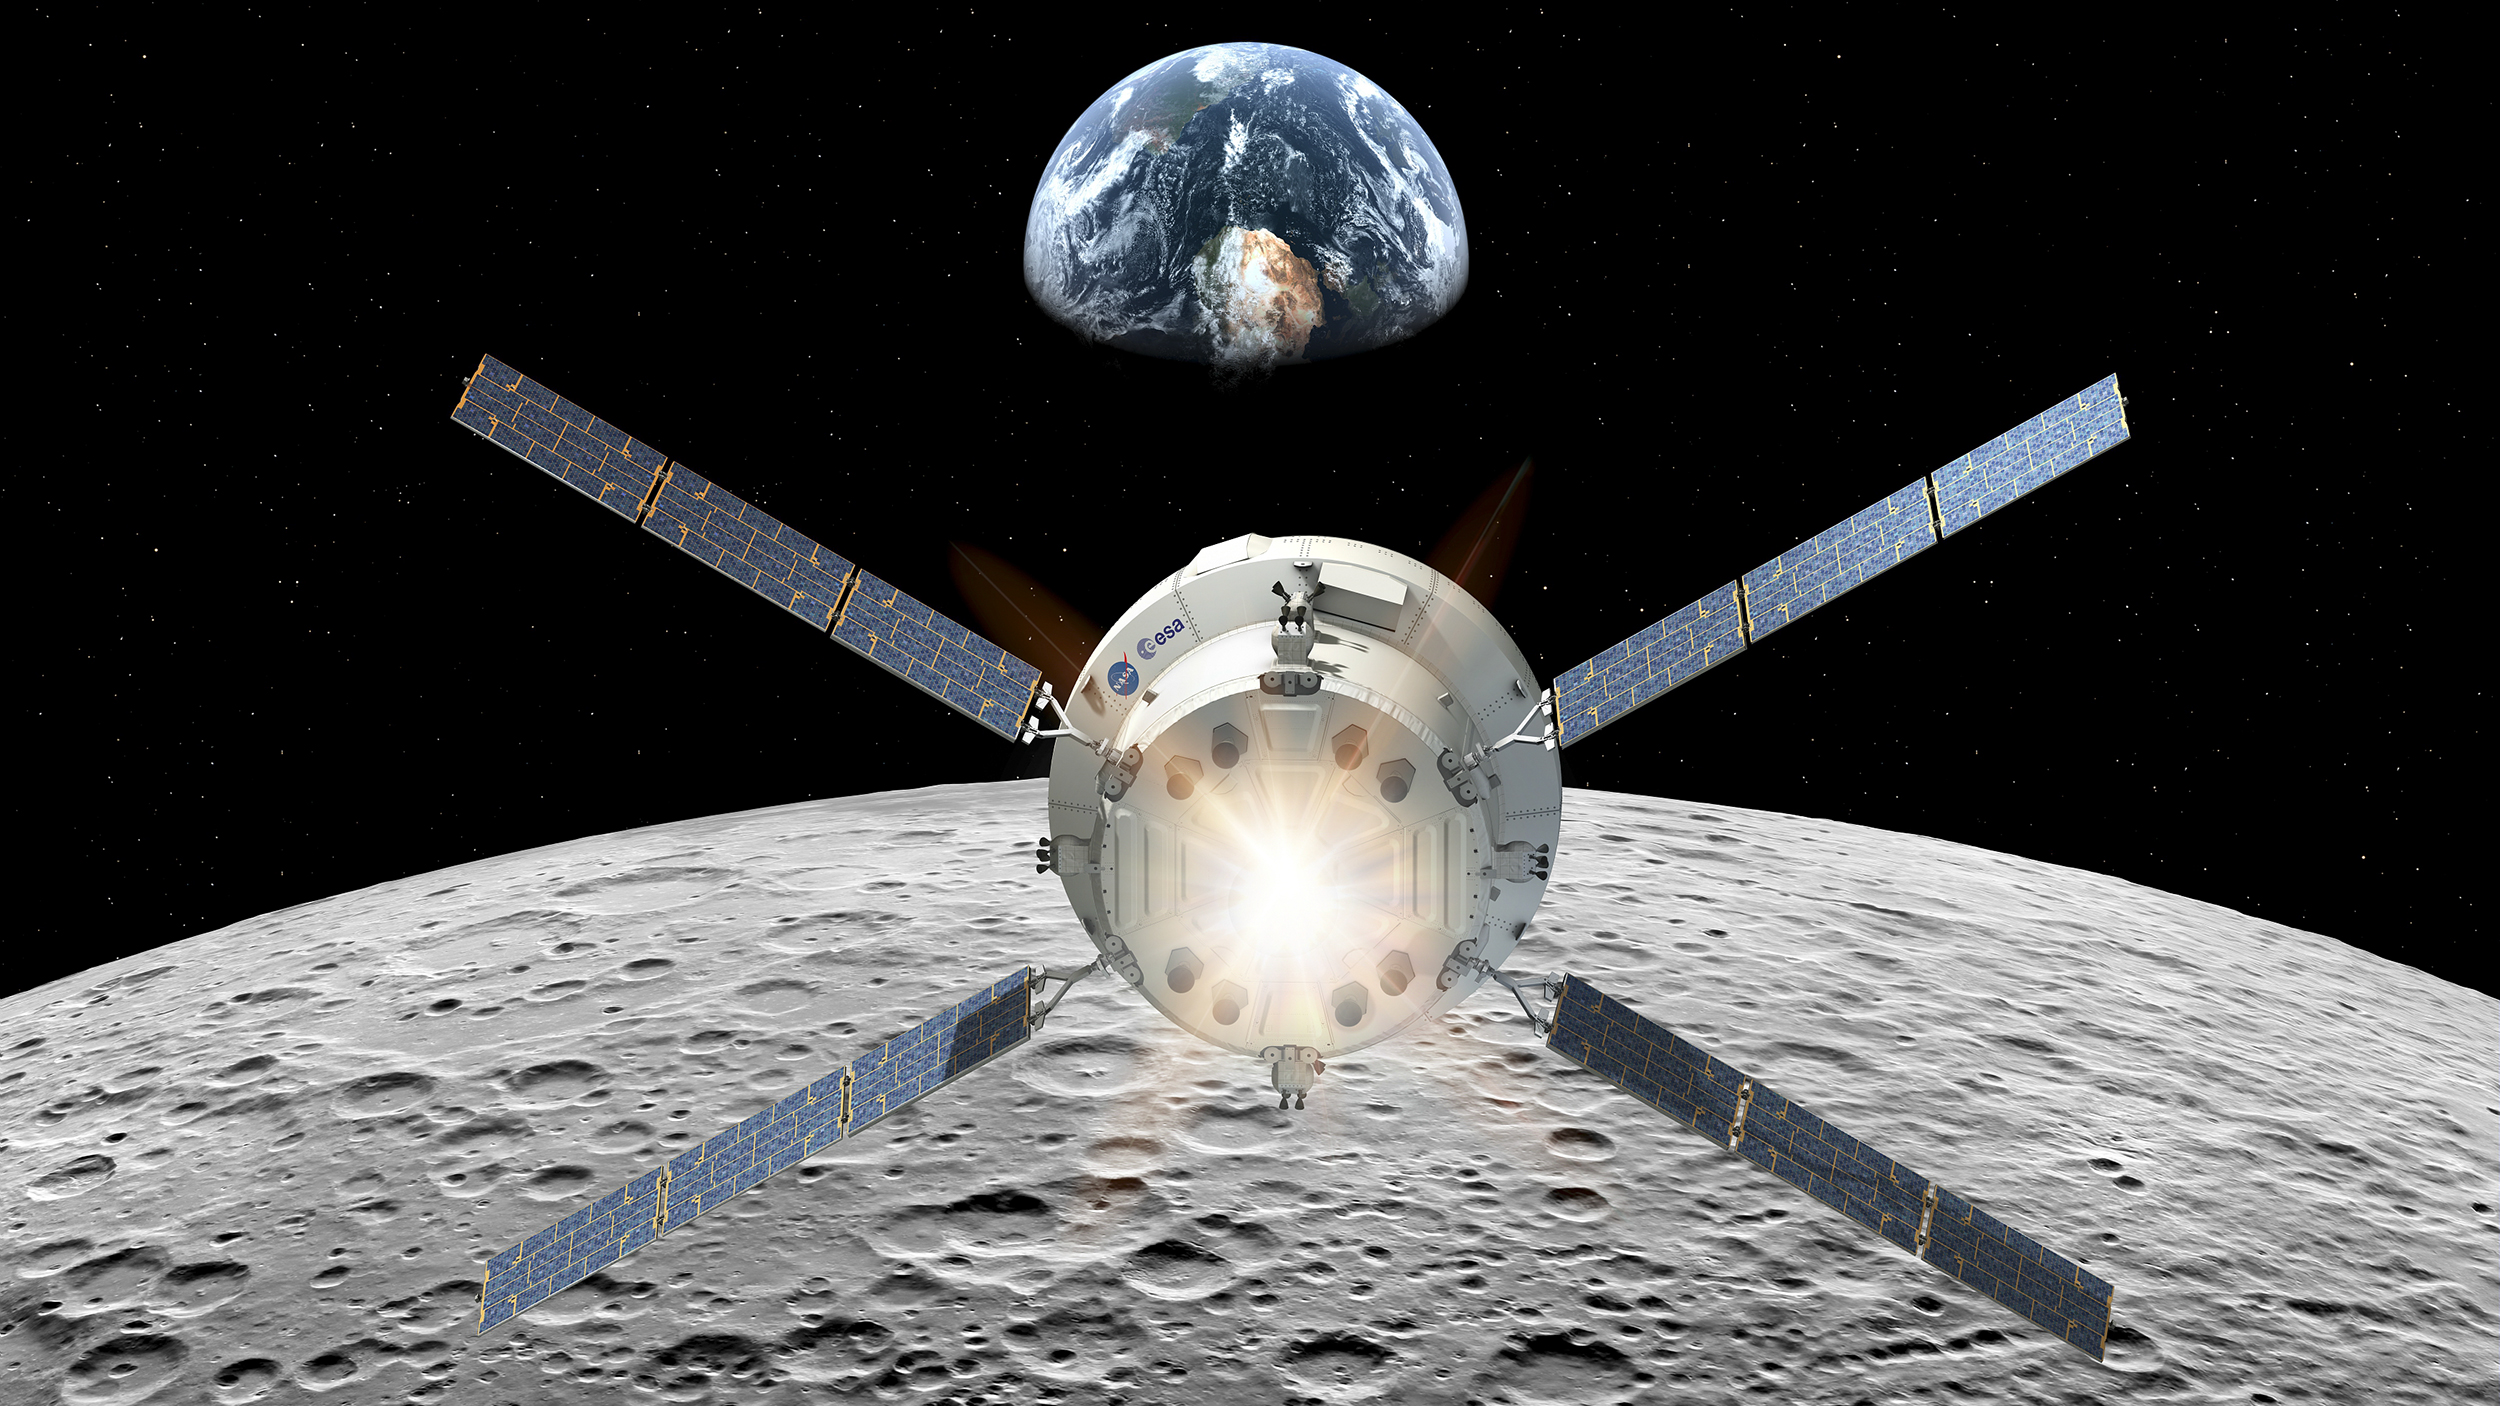 Vue d'artiste du module de service de l'Agence spatiale européenne équipera le véhicule Orion. Ce module a pour fonction de propulser la capsule Orion, d'assurer son contrôle thermique et de lui fournir la puissance électrique nécessaire à son bon fonctionnement, en plus de stocker les réserves d'eau, d'oxygène et d'azote. Lors d'Artemis 2, il sera utilisé pour envoyer Orion à destination de la Lune.&nbsp;© ESA, D. Ducros